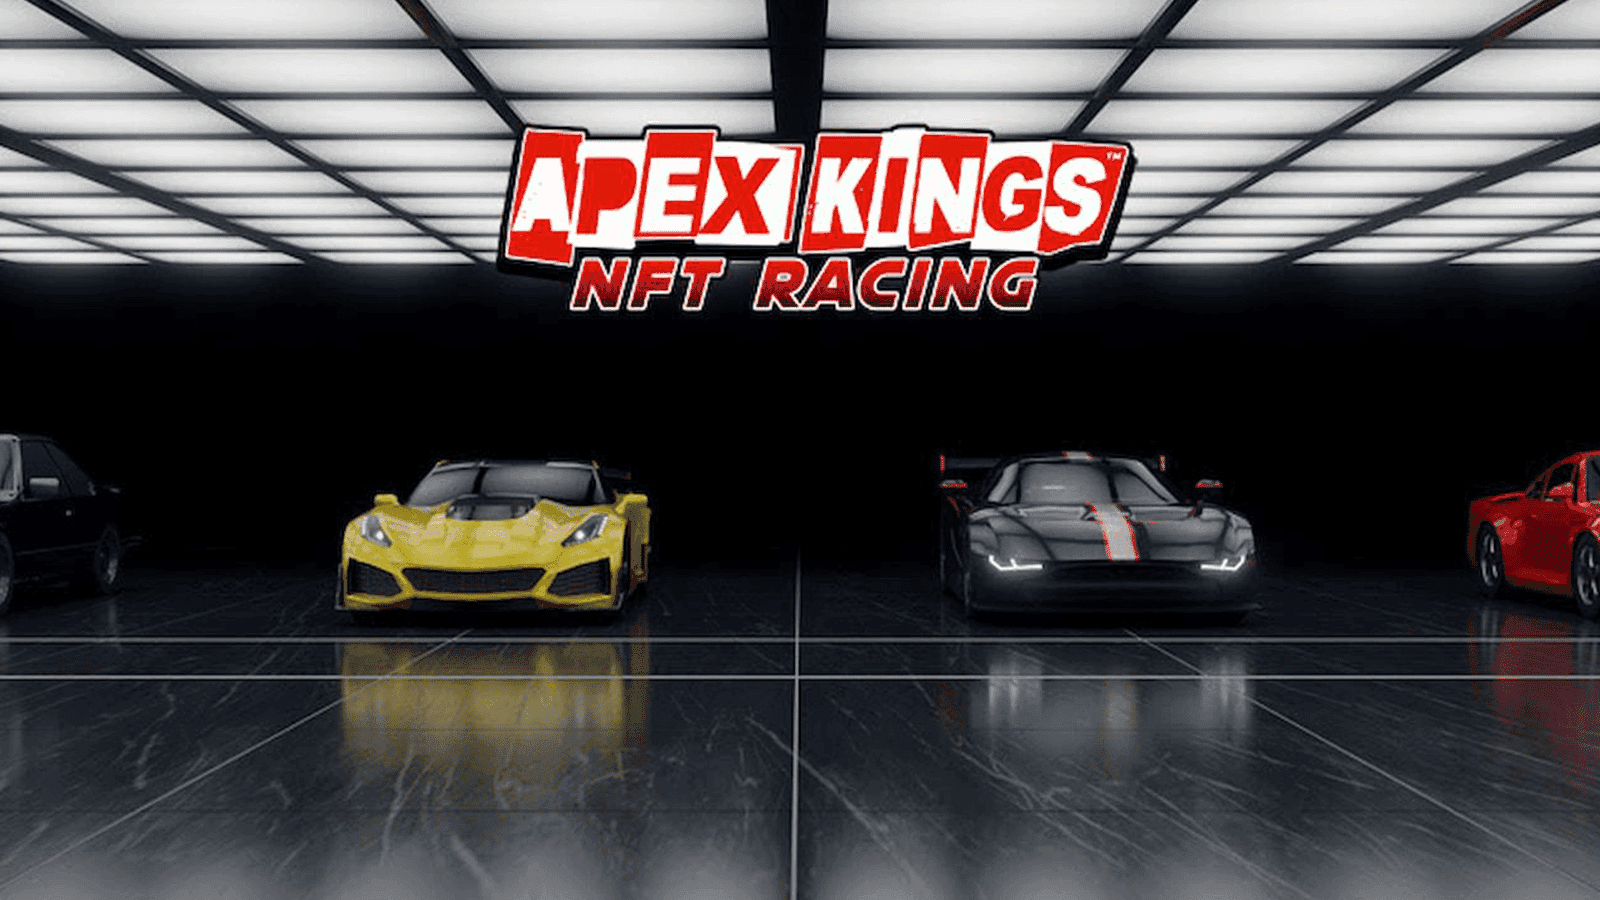 Apex Kings NFT Racing